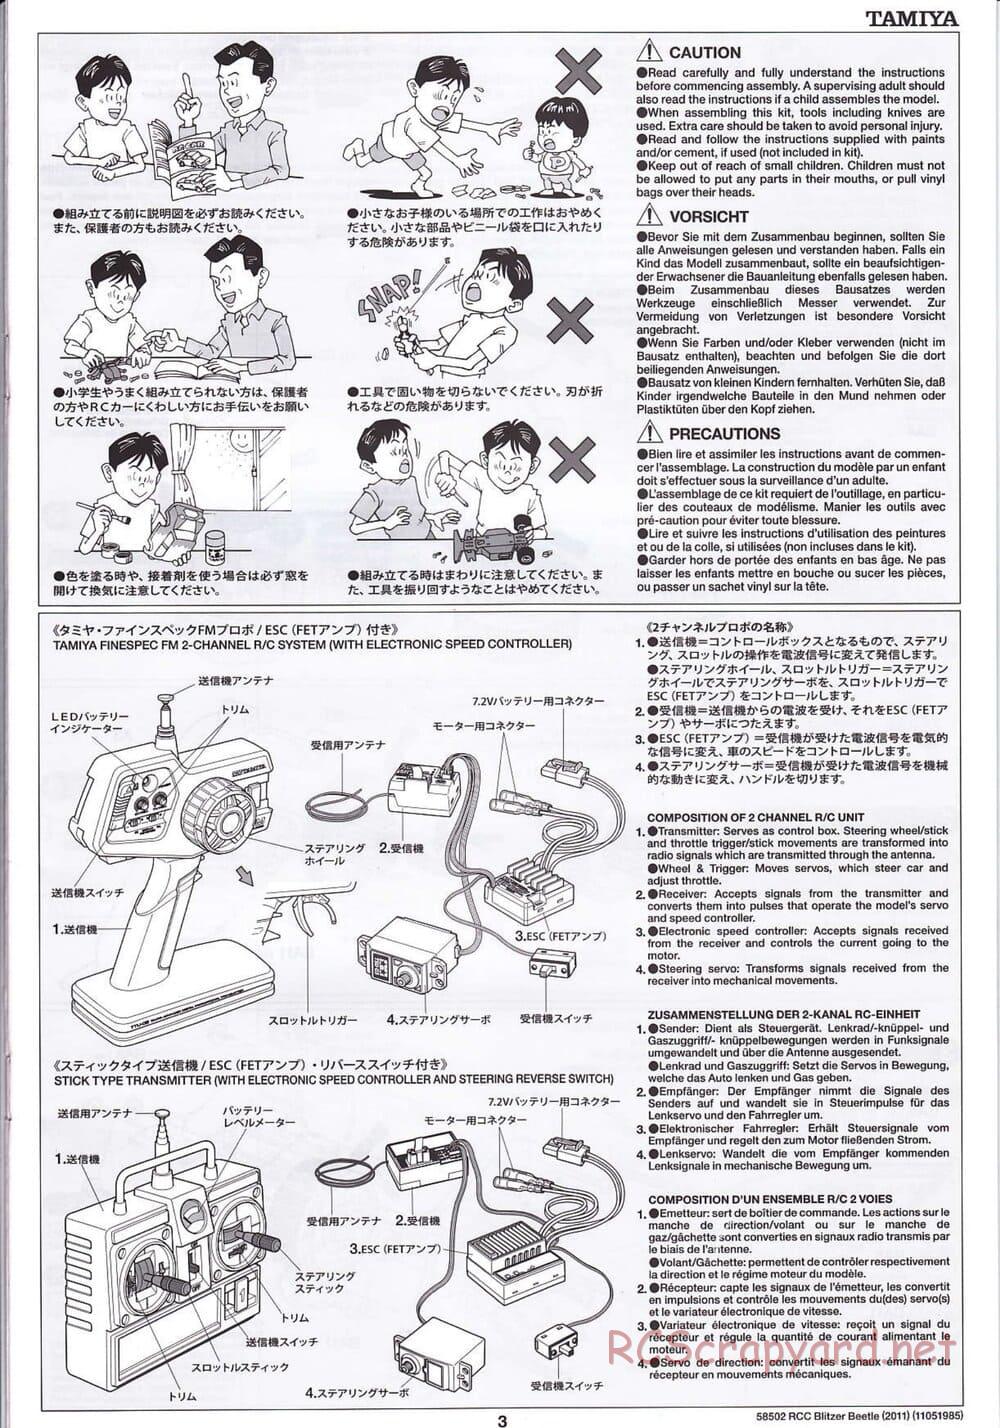 Tamiya - Blitzer Beetle 2011 - FAL Chassis - Manual - Page 3